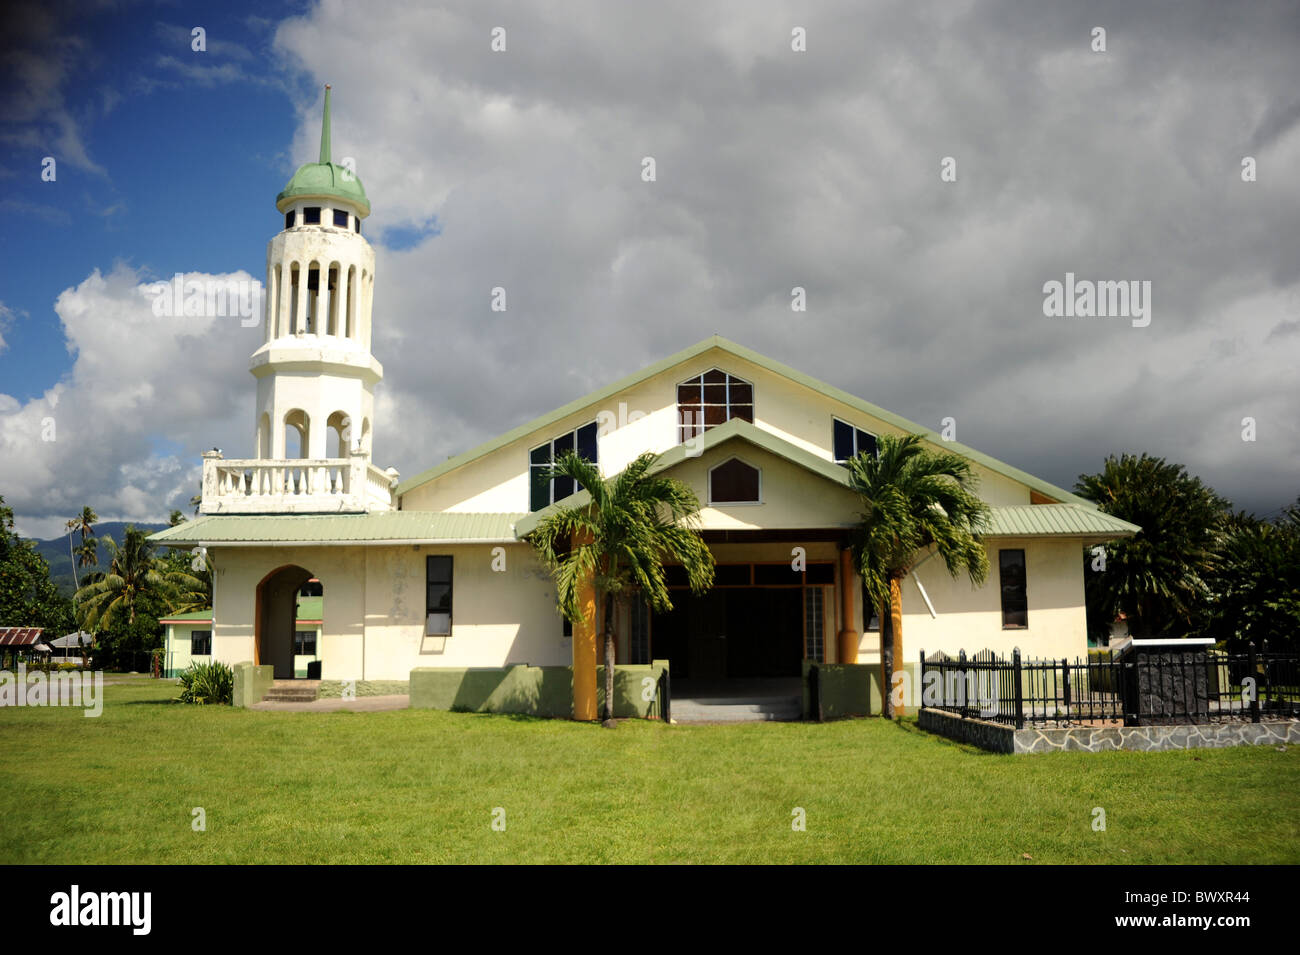 EFKS Vaiala Church, Beach Road, Apia, Western Samoa Stock Photo